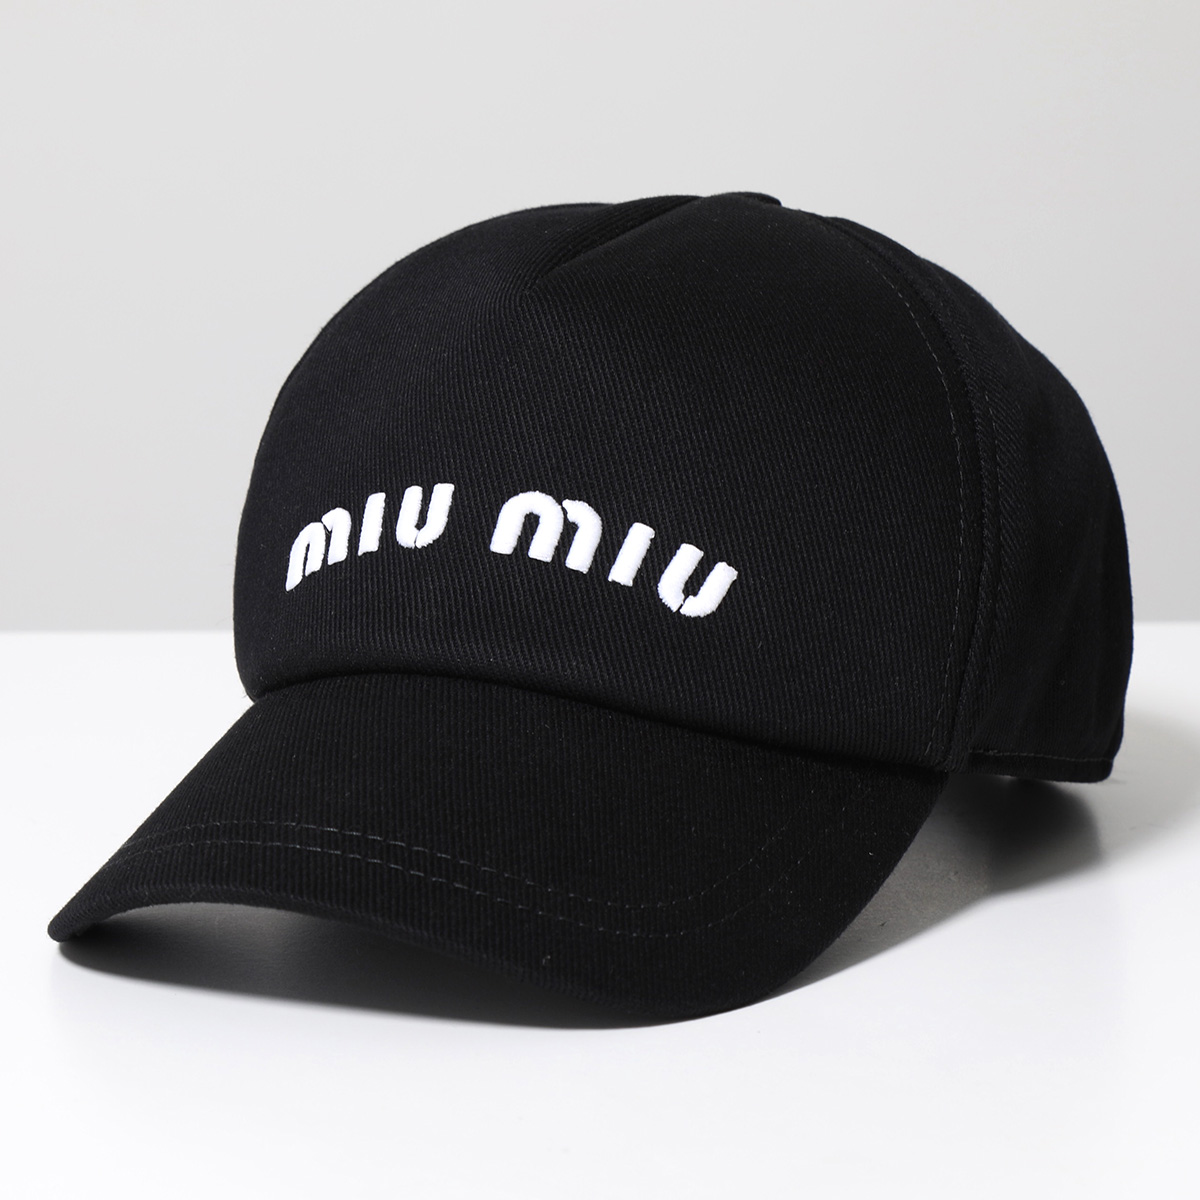 MIUMIU ミュウミュウ ベースボールキャップ 5HC179 2DXI レディース ロゴ 刺繍 エンボス デニム 帽子カラー4色